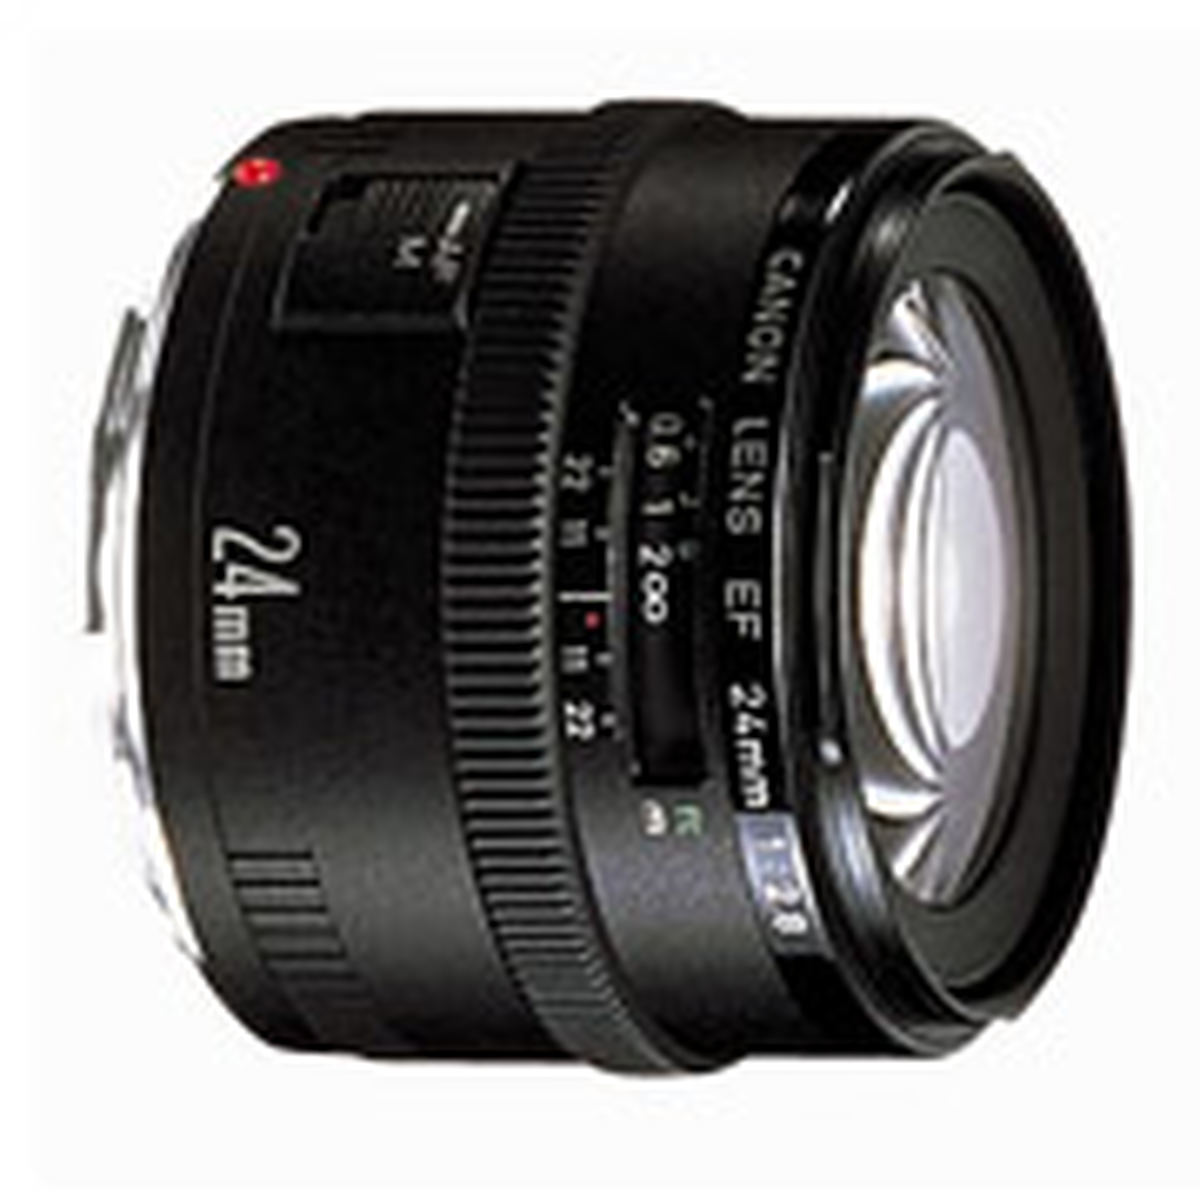 Canon EF 24mm f/2.8 : Caratteristiche e Opinioni | JuzaPhoto